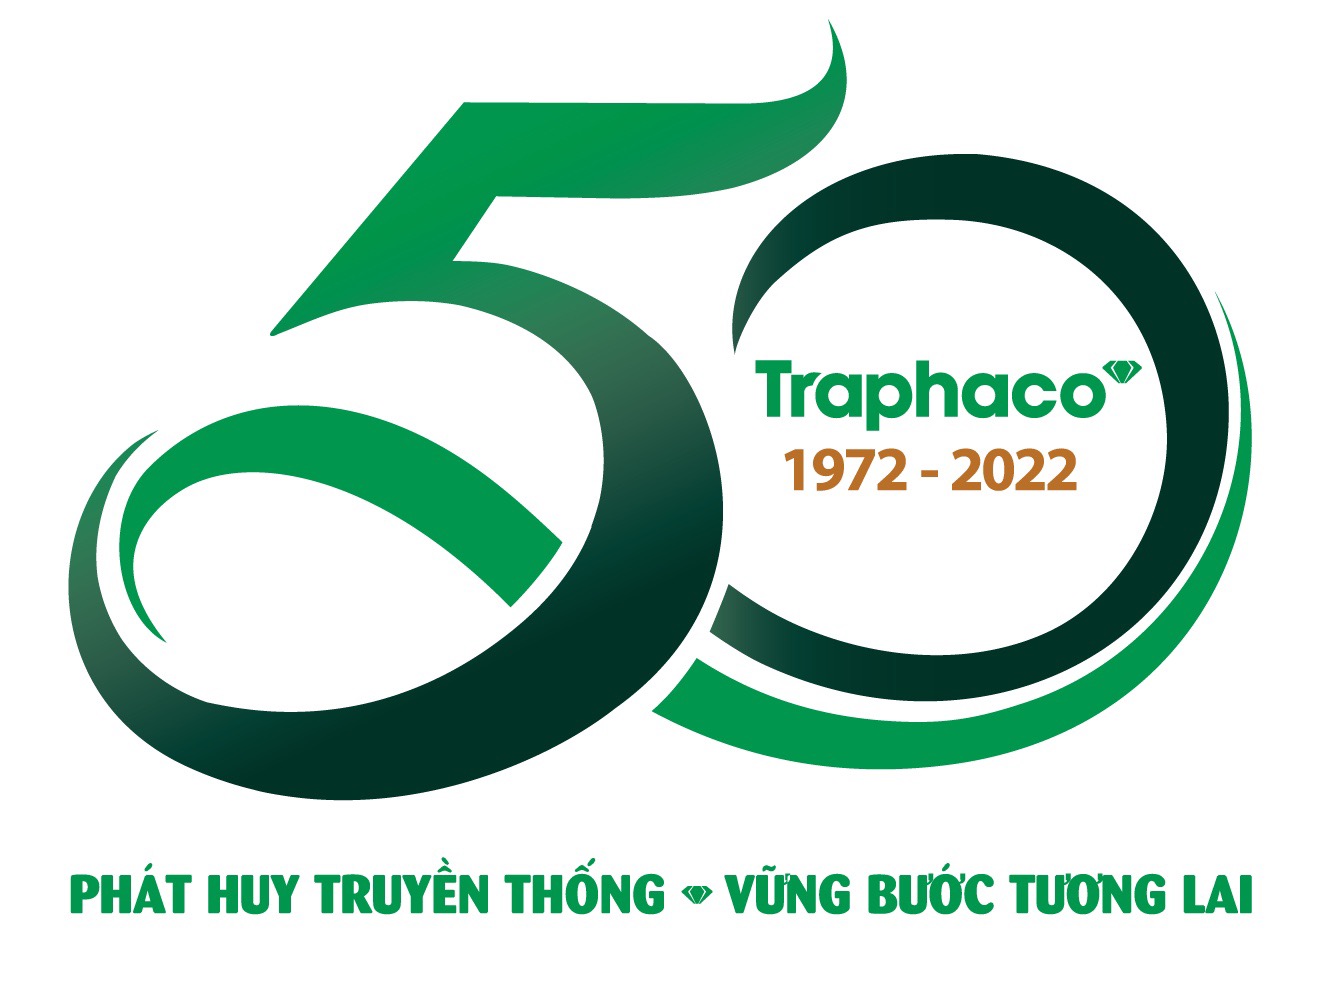 Traphaco 50 năm - Hành trình tiên phong kiến tạo Kỷ nguyên xanh